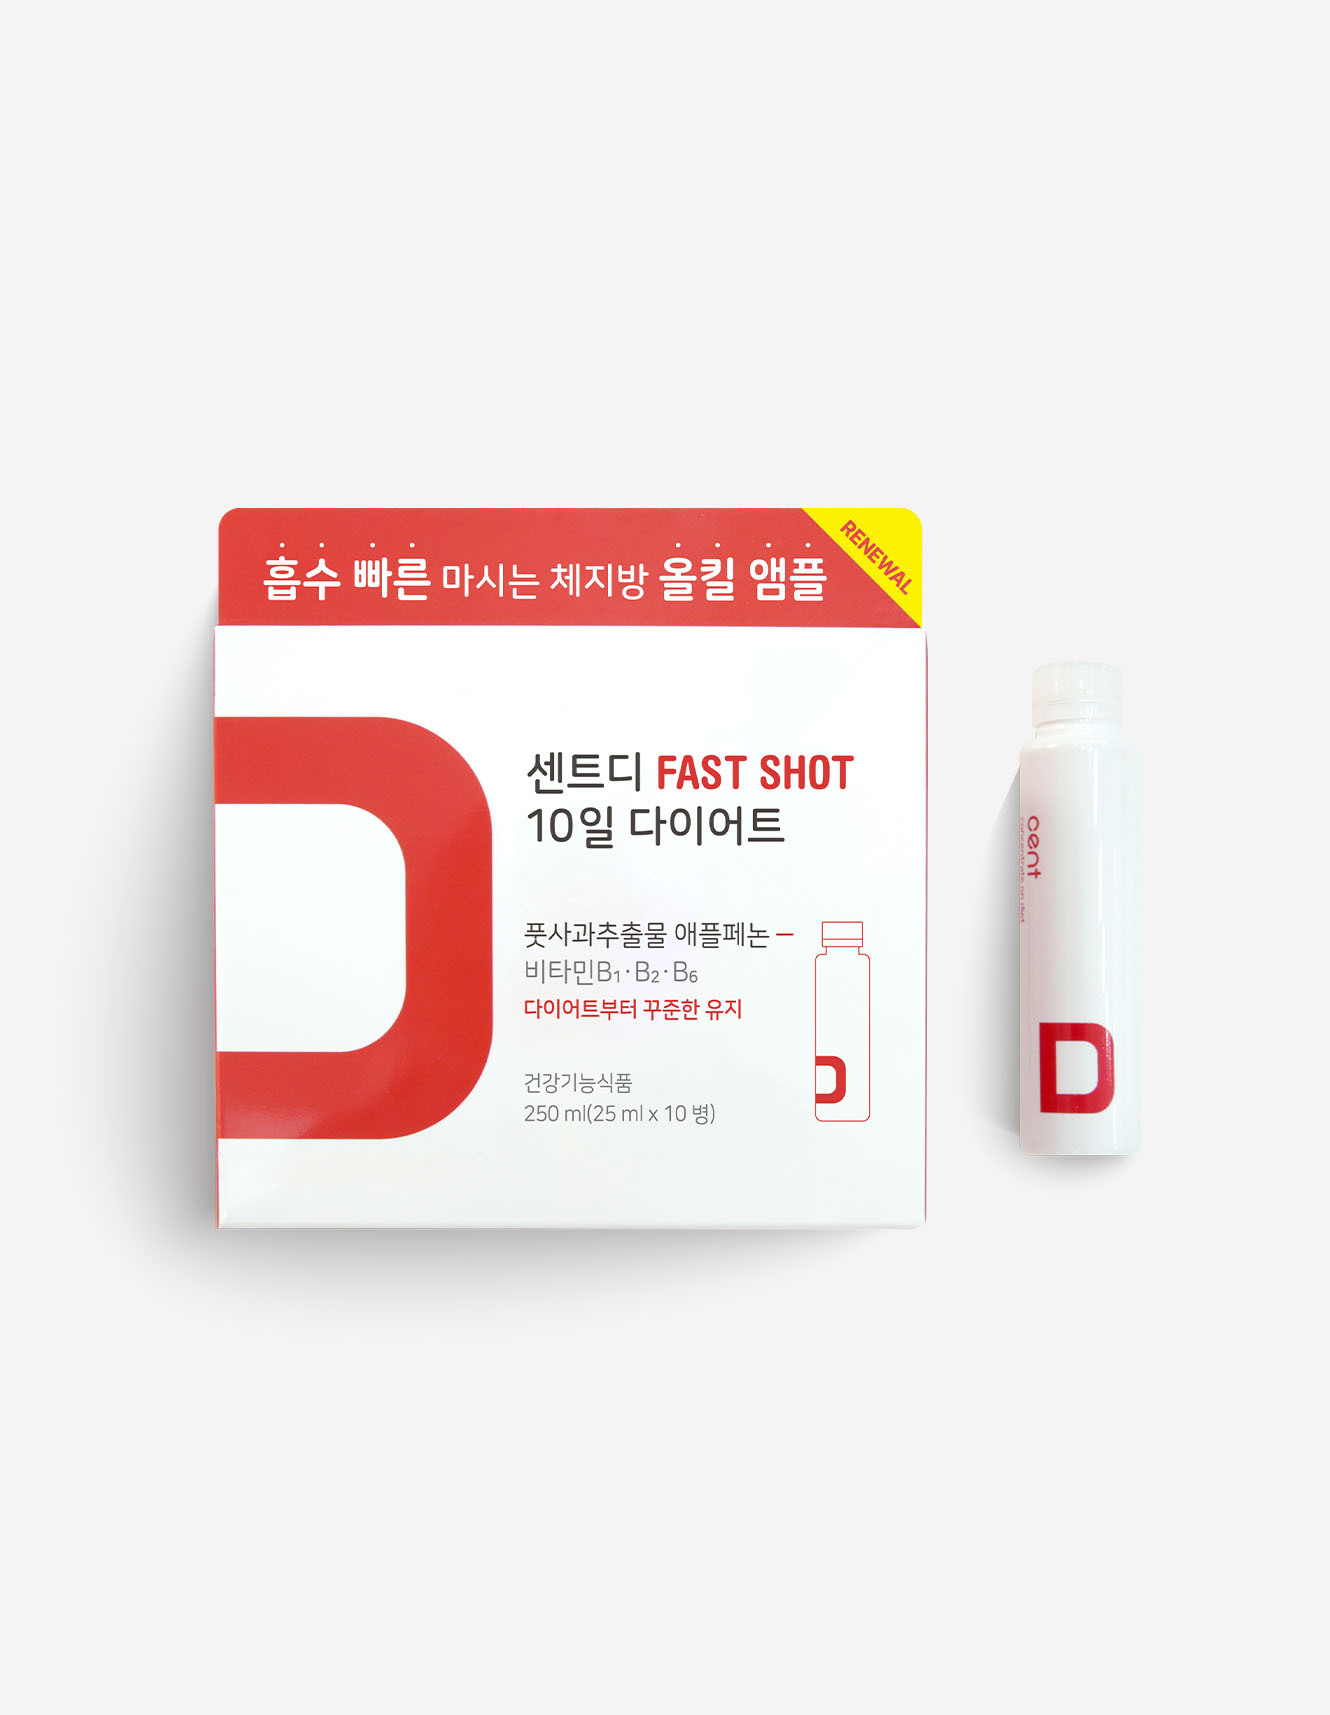 [센트 공식몰] ♡센트디 패스트샷 10일 다이어트 4+2 프로모션♡